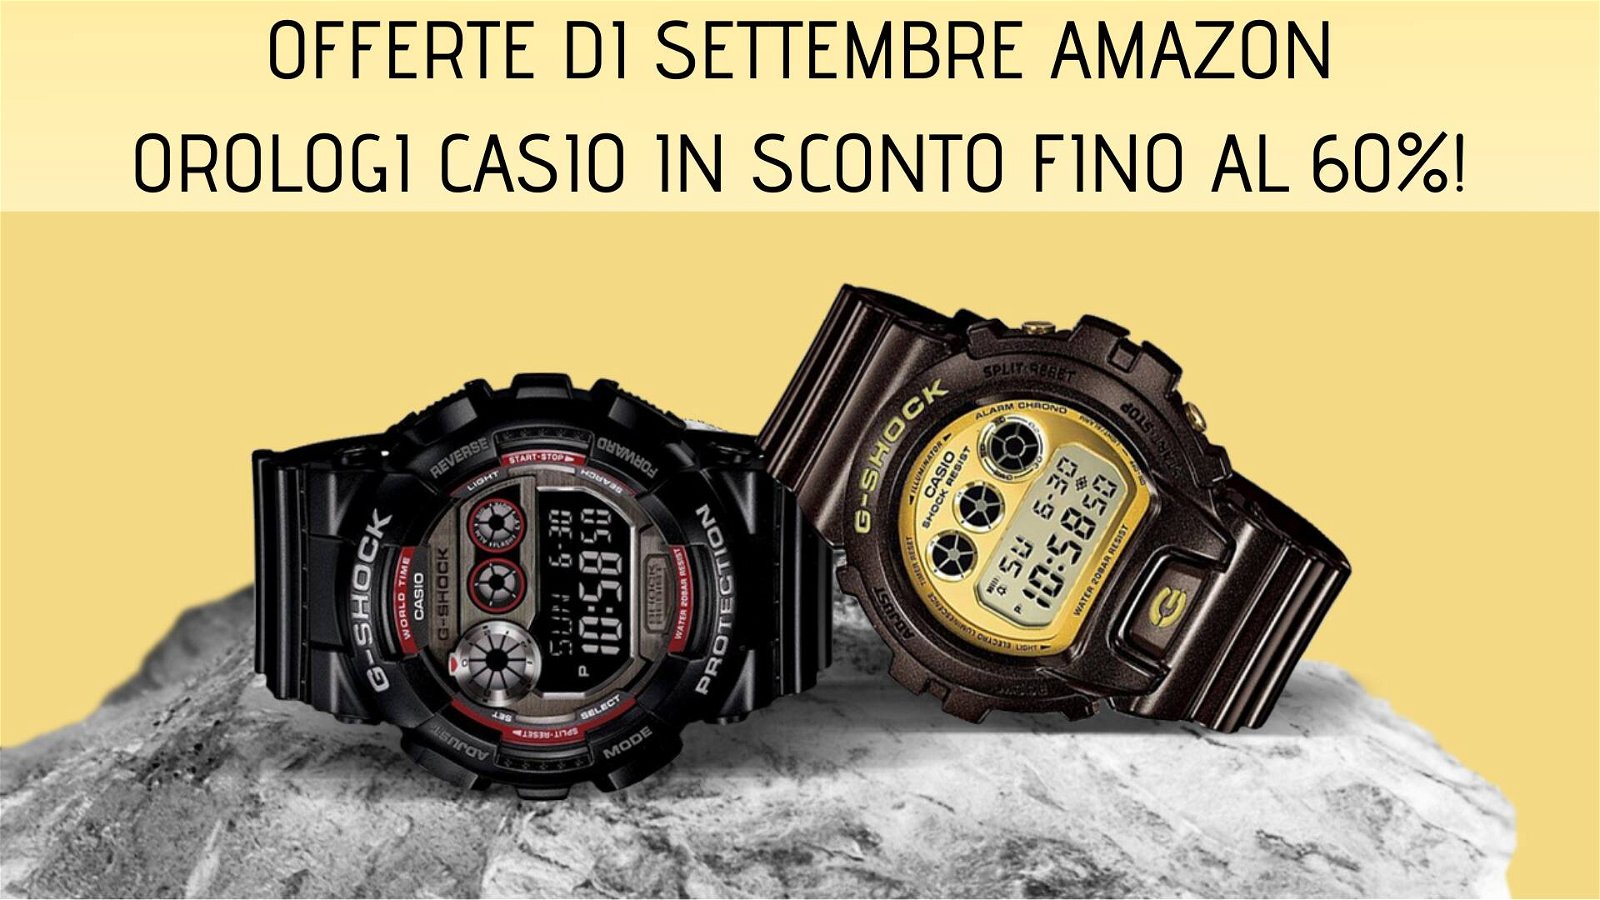 Immagine di Offerte di settembre Amazon: sconti fino al 60% sugli orologi Casio!